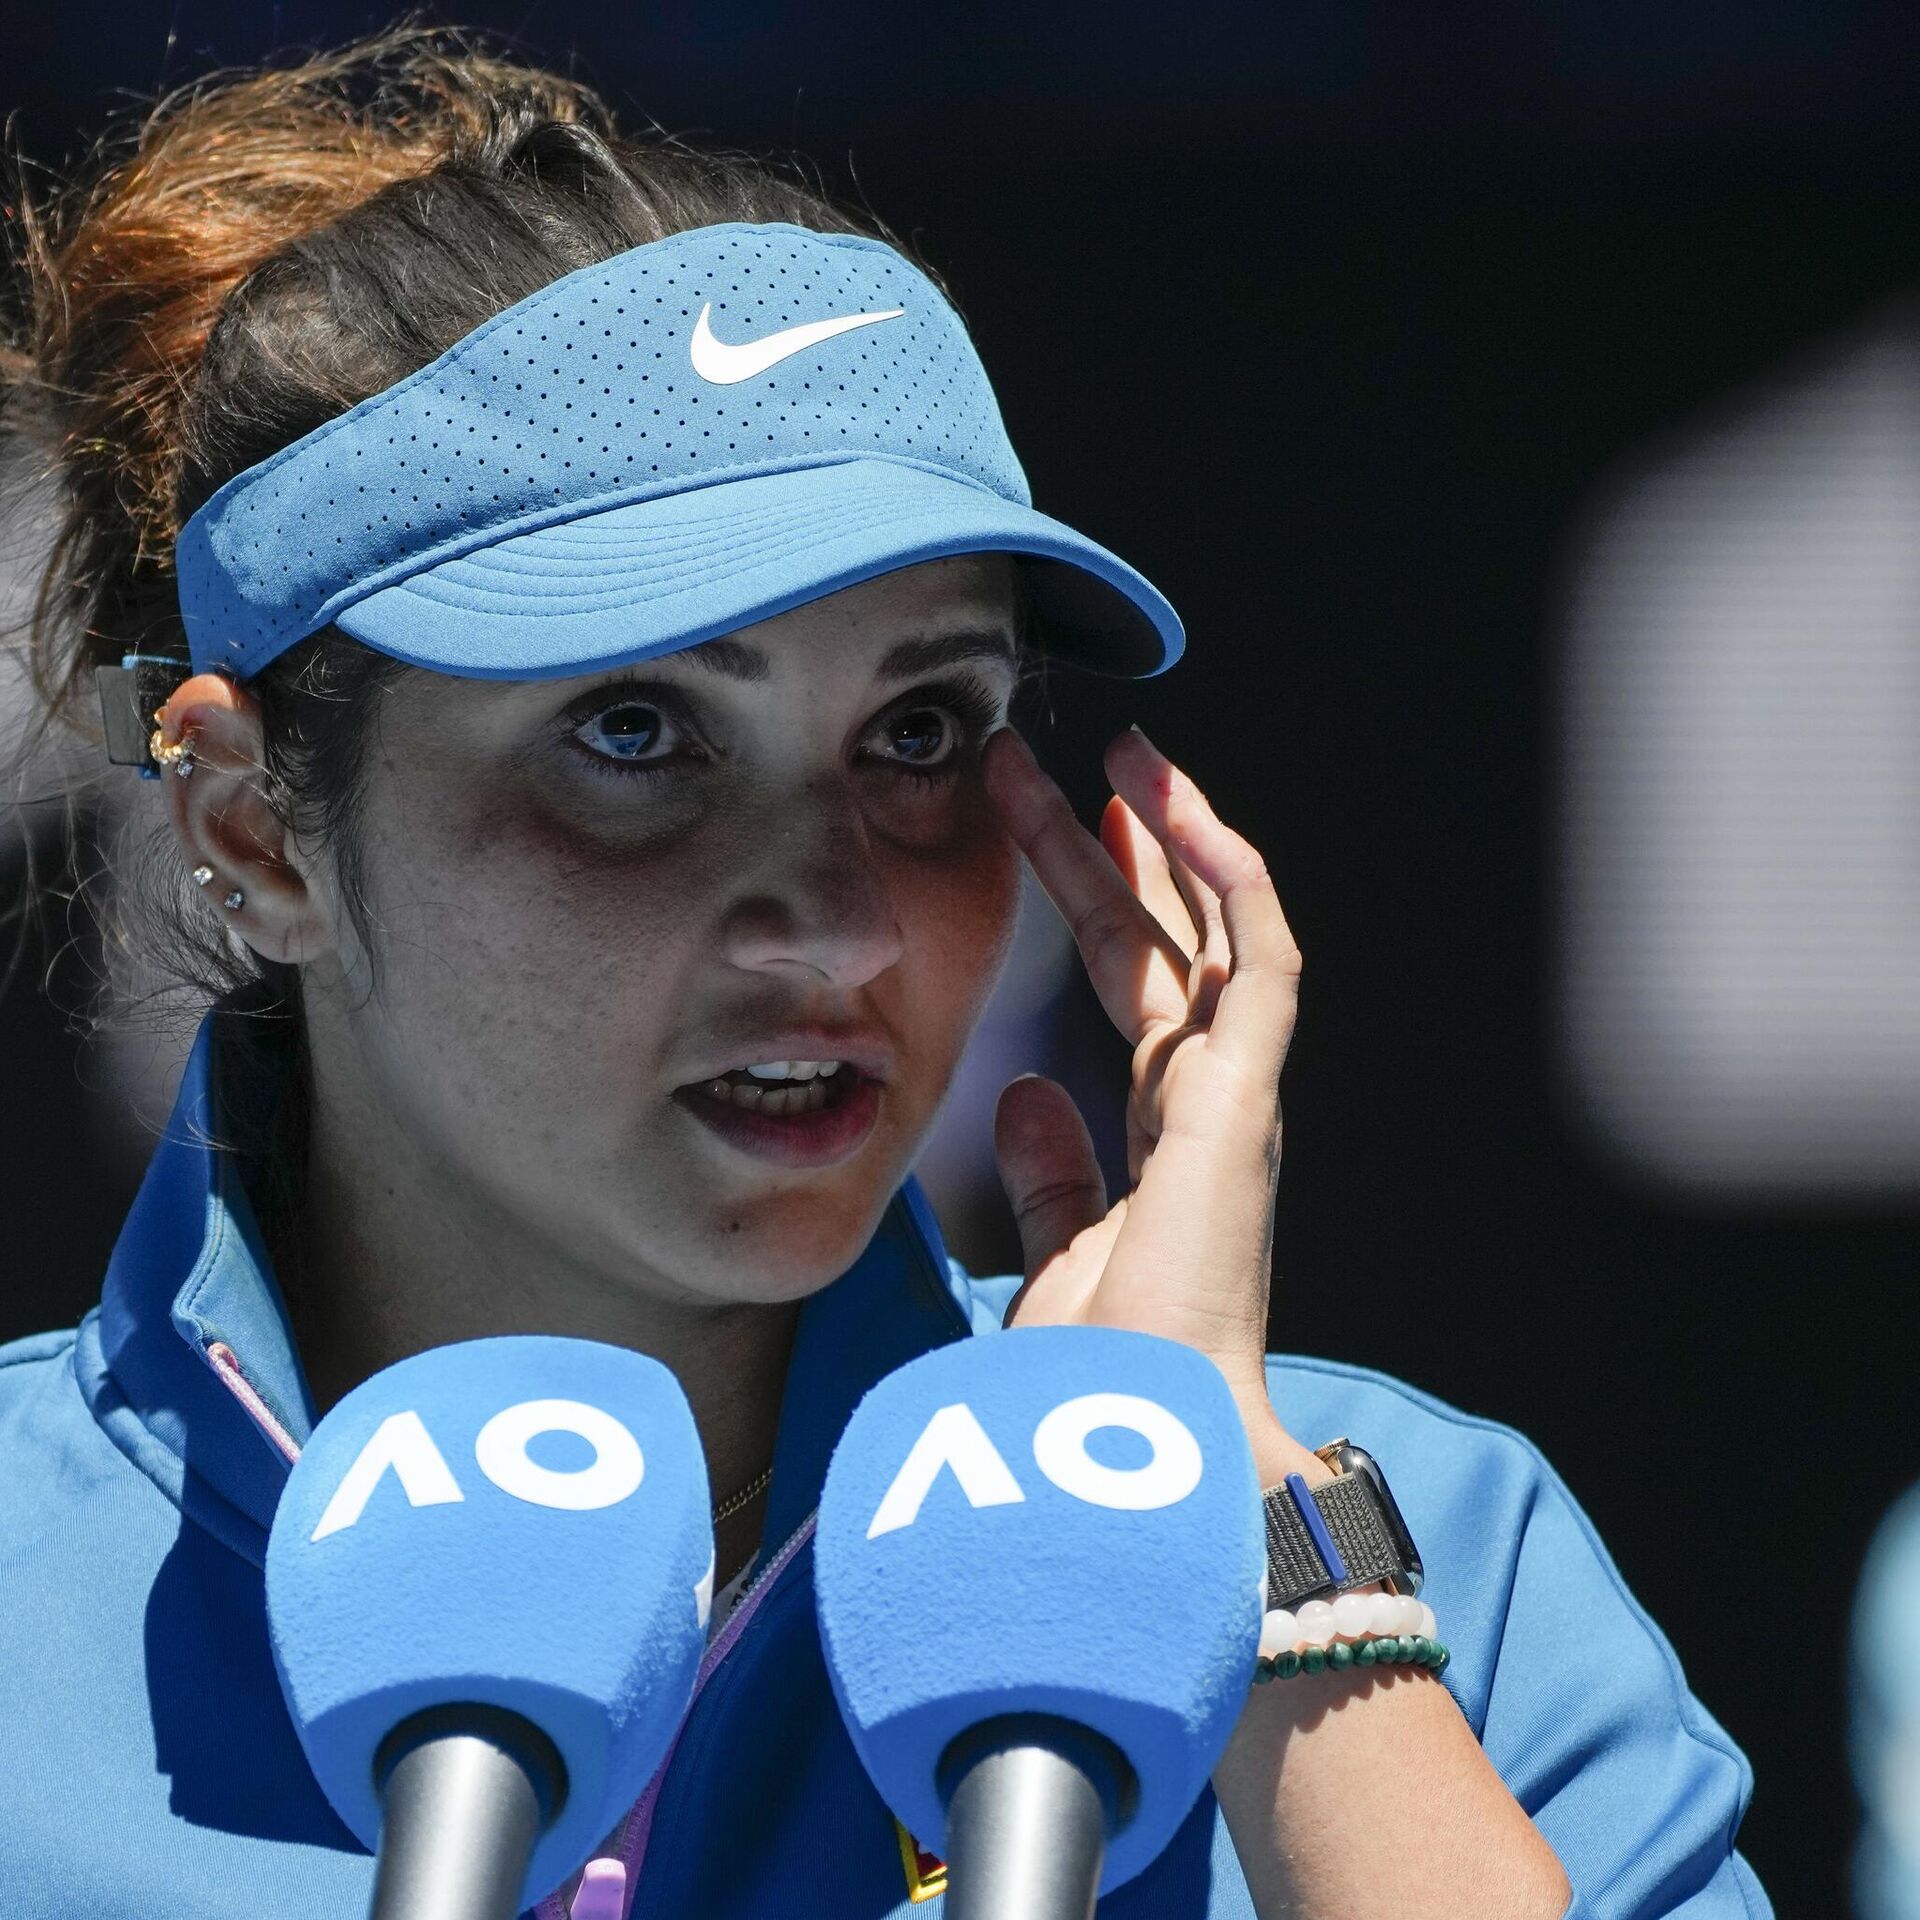 Dubai Tennis Championships 2023: Sania Mirza set to play last tournament